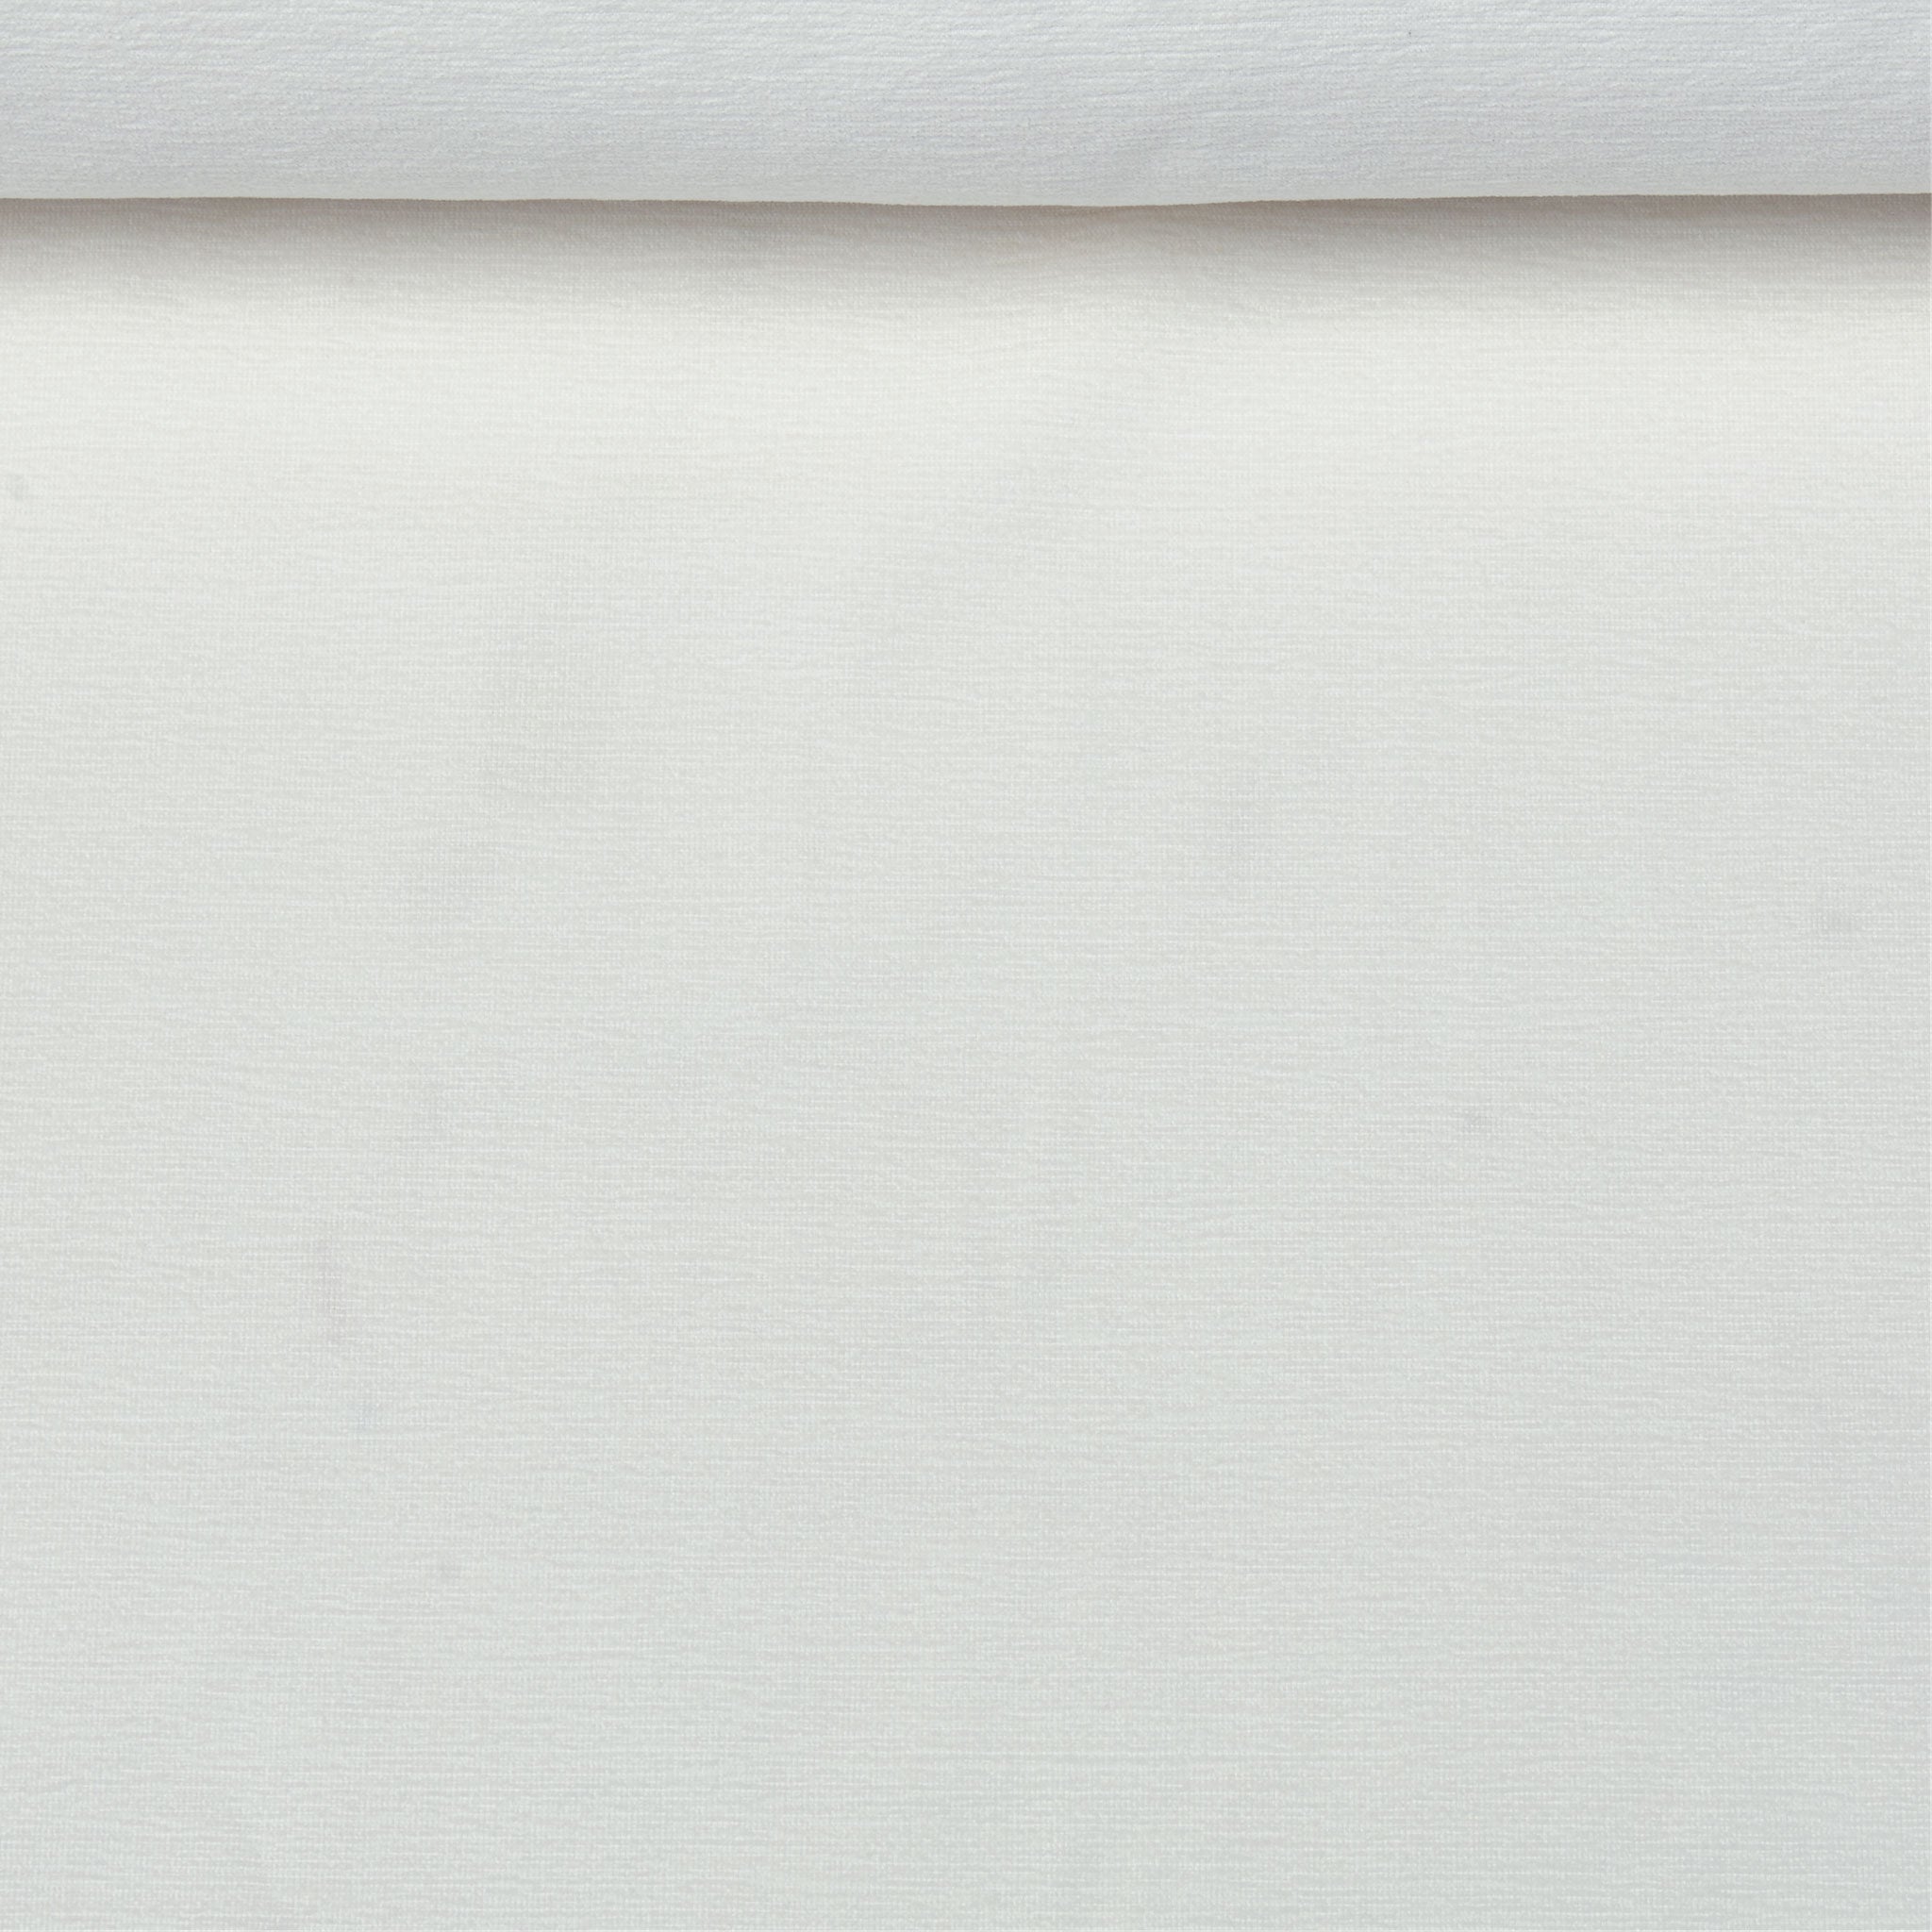 Tissu acrylique blanc de texture éponge teint dans la masse, utilisé pour les flotteurs de piscine de luxe.